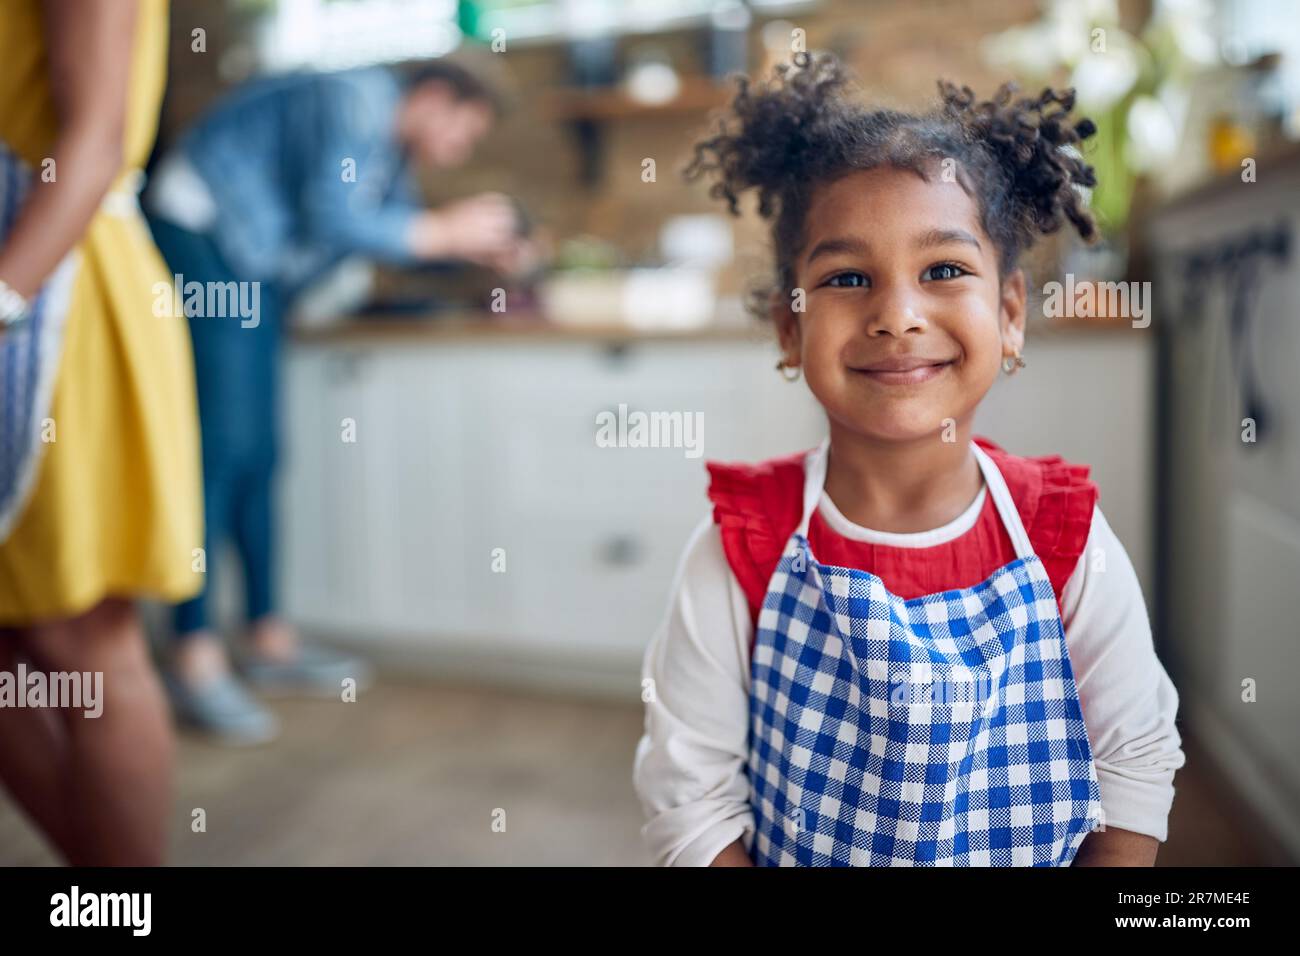 Das afroamerikanische Mädchen steht im Mittelpunkt, wenn es selbstbewusst in die Kamera blickt und ihr lebendiges Lächeln den Rahmen beleuchtet. Stockfoto